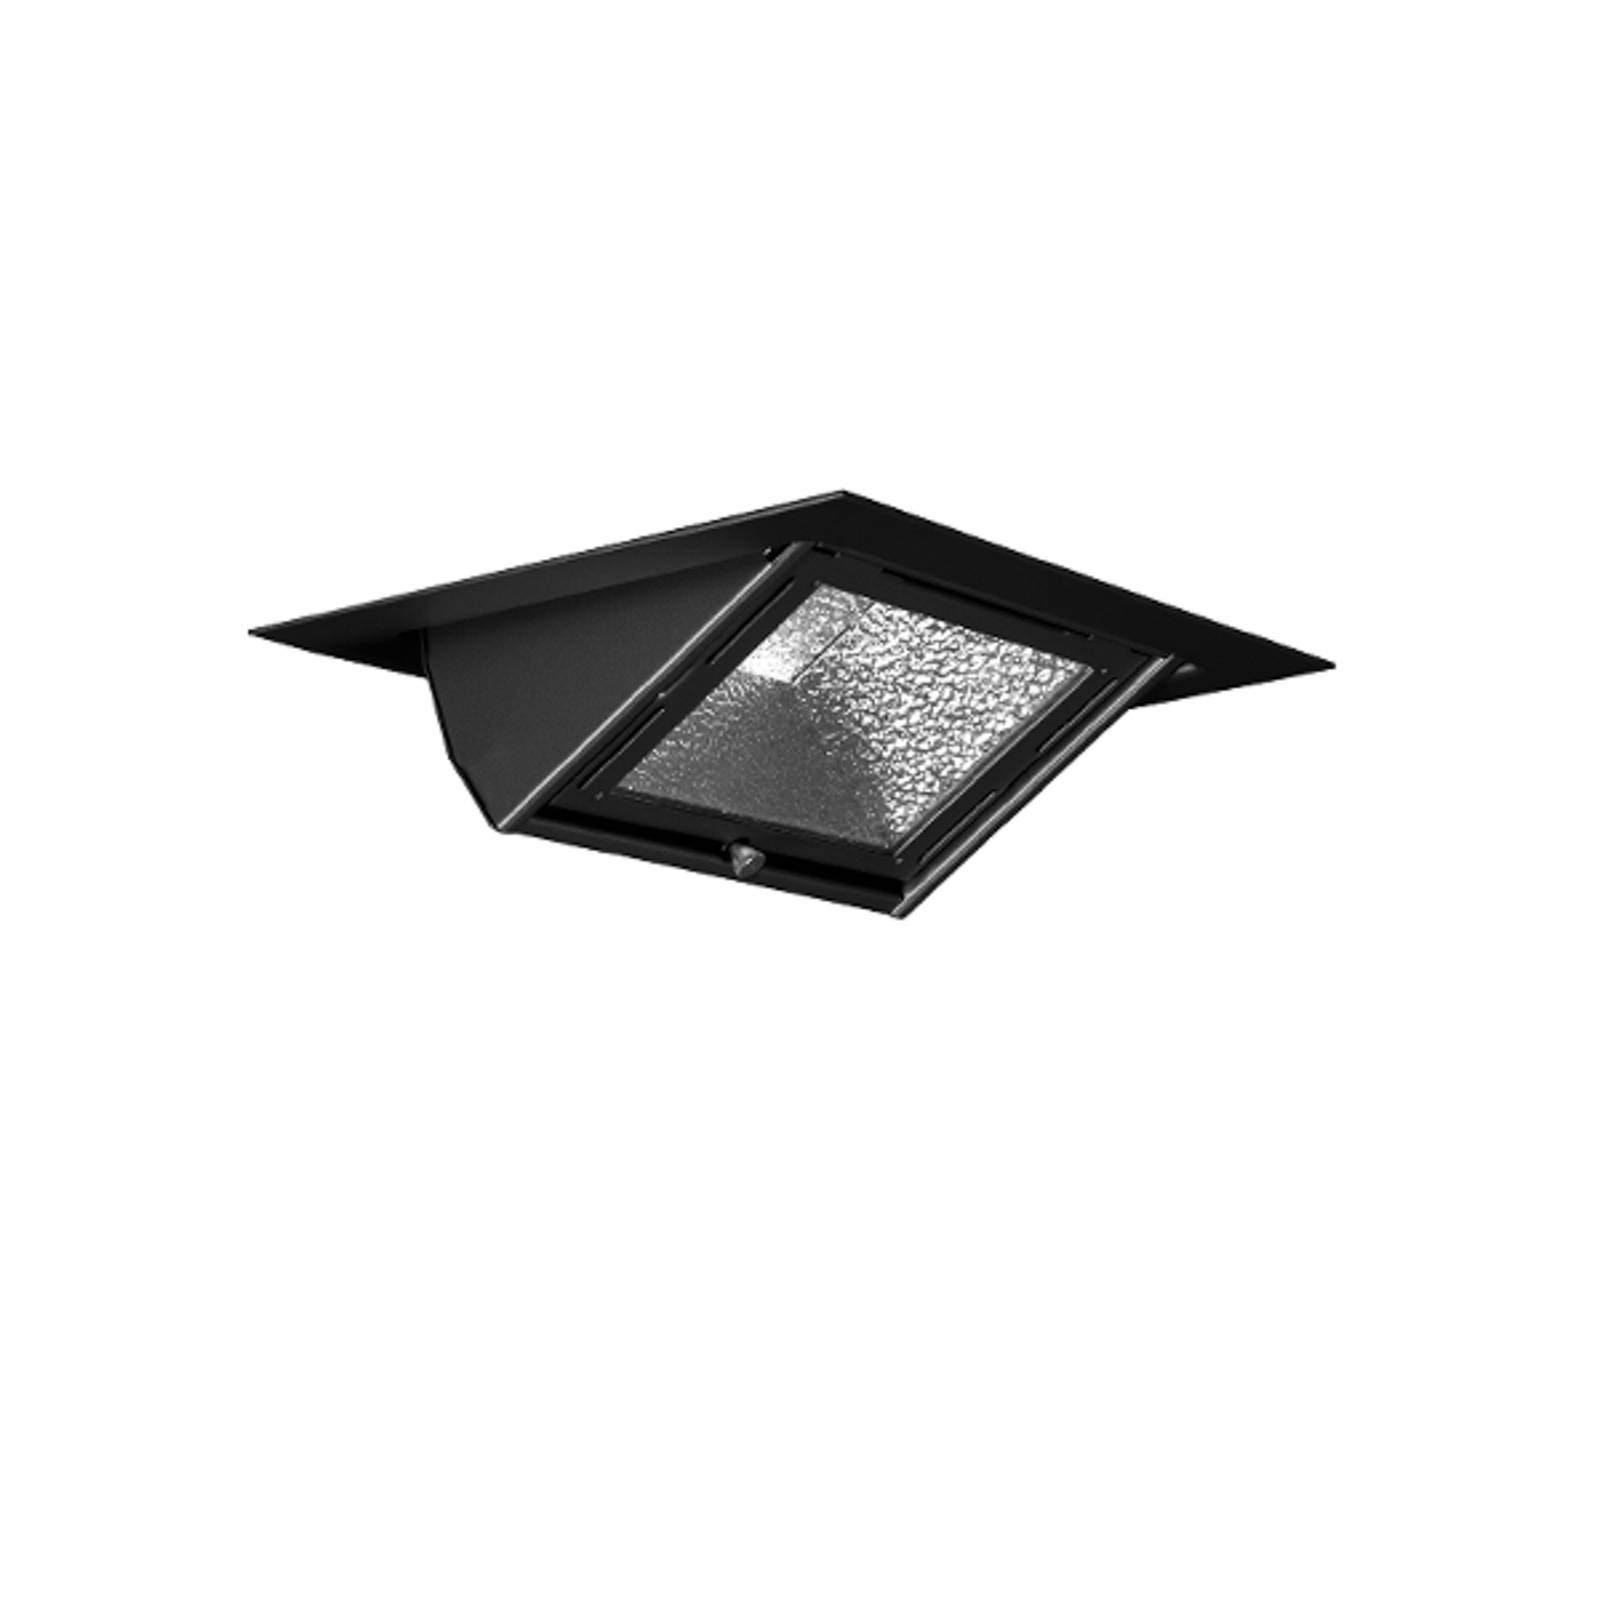 Image of Lampe encastrée LED Vario Classic Bakery 63W noire 4043544559920